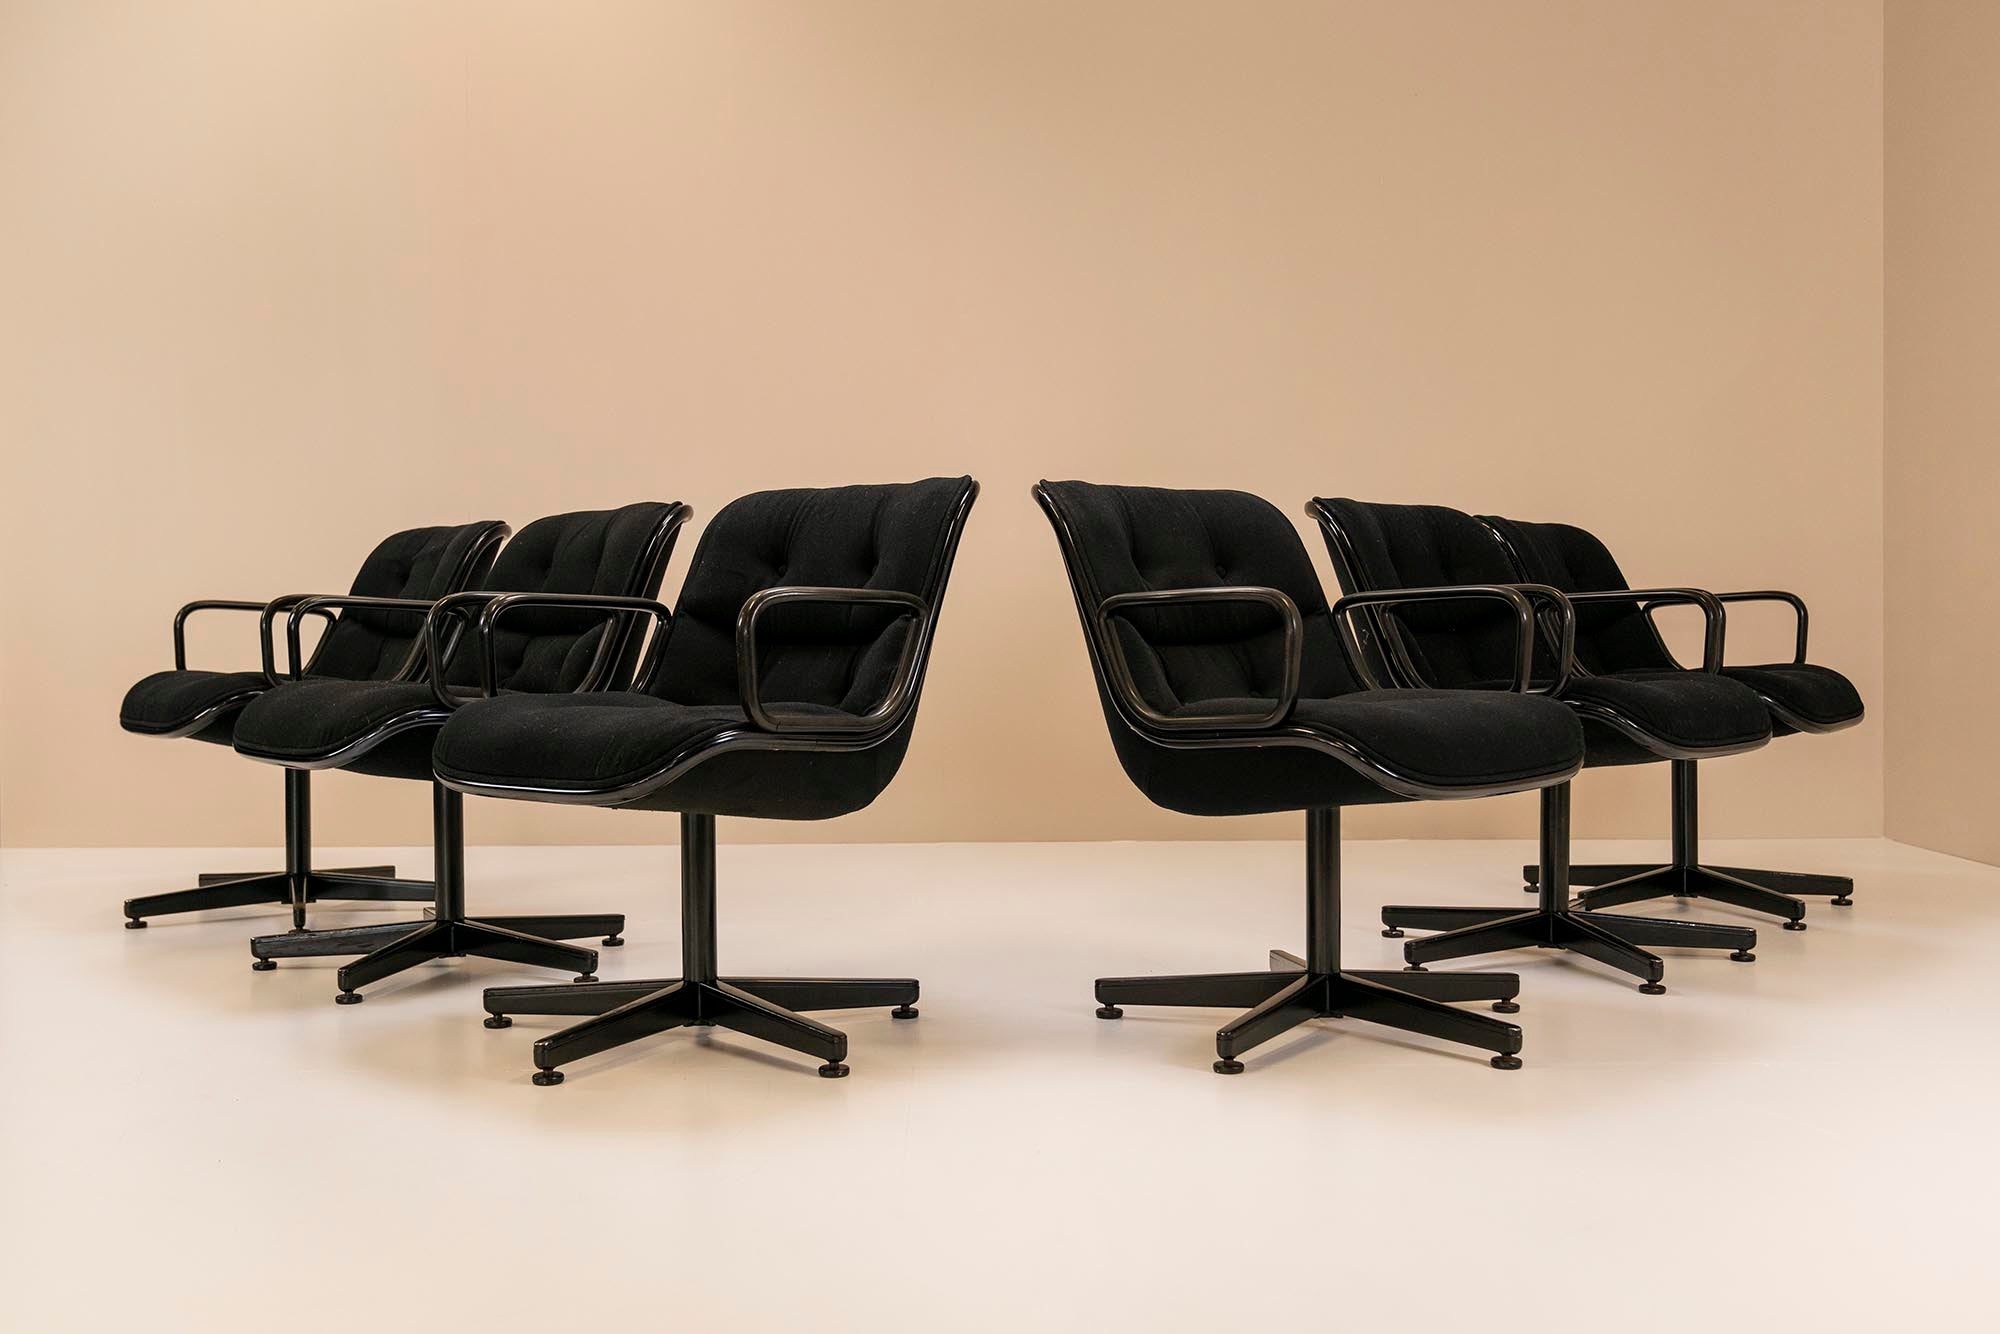 Ces 12 fauteuils de direction sont un véritable classique issu de l'illustre écurie du fabricant Knoll, conçu en 1963 par le designer américain Charles Pollock. Un maître absolu dans la création de mobilier de bureau qui a principalement servi et